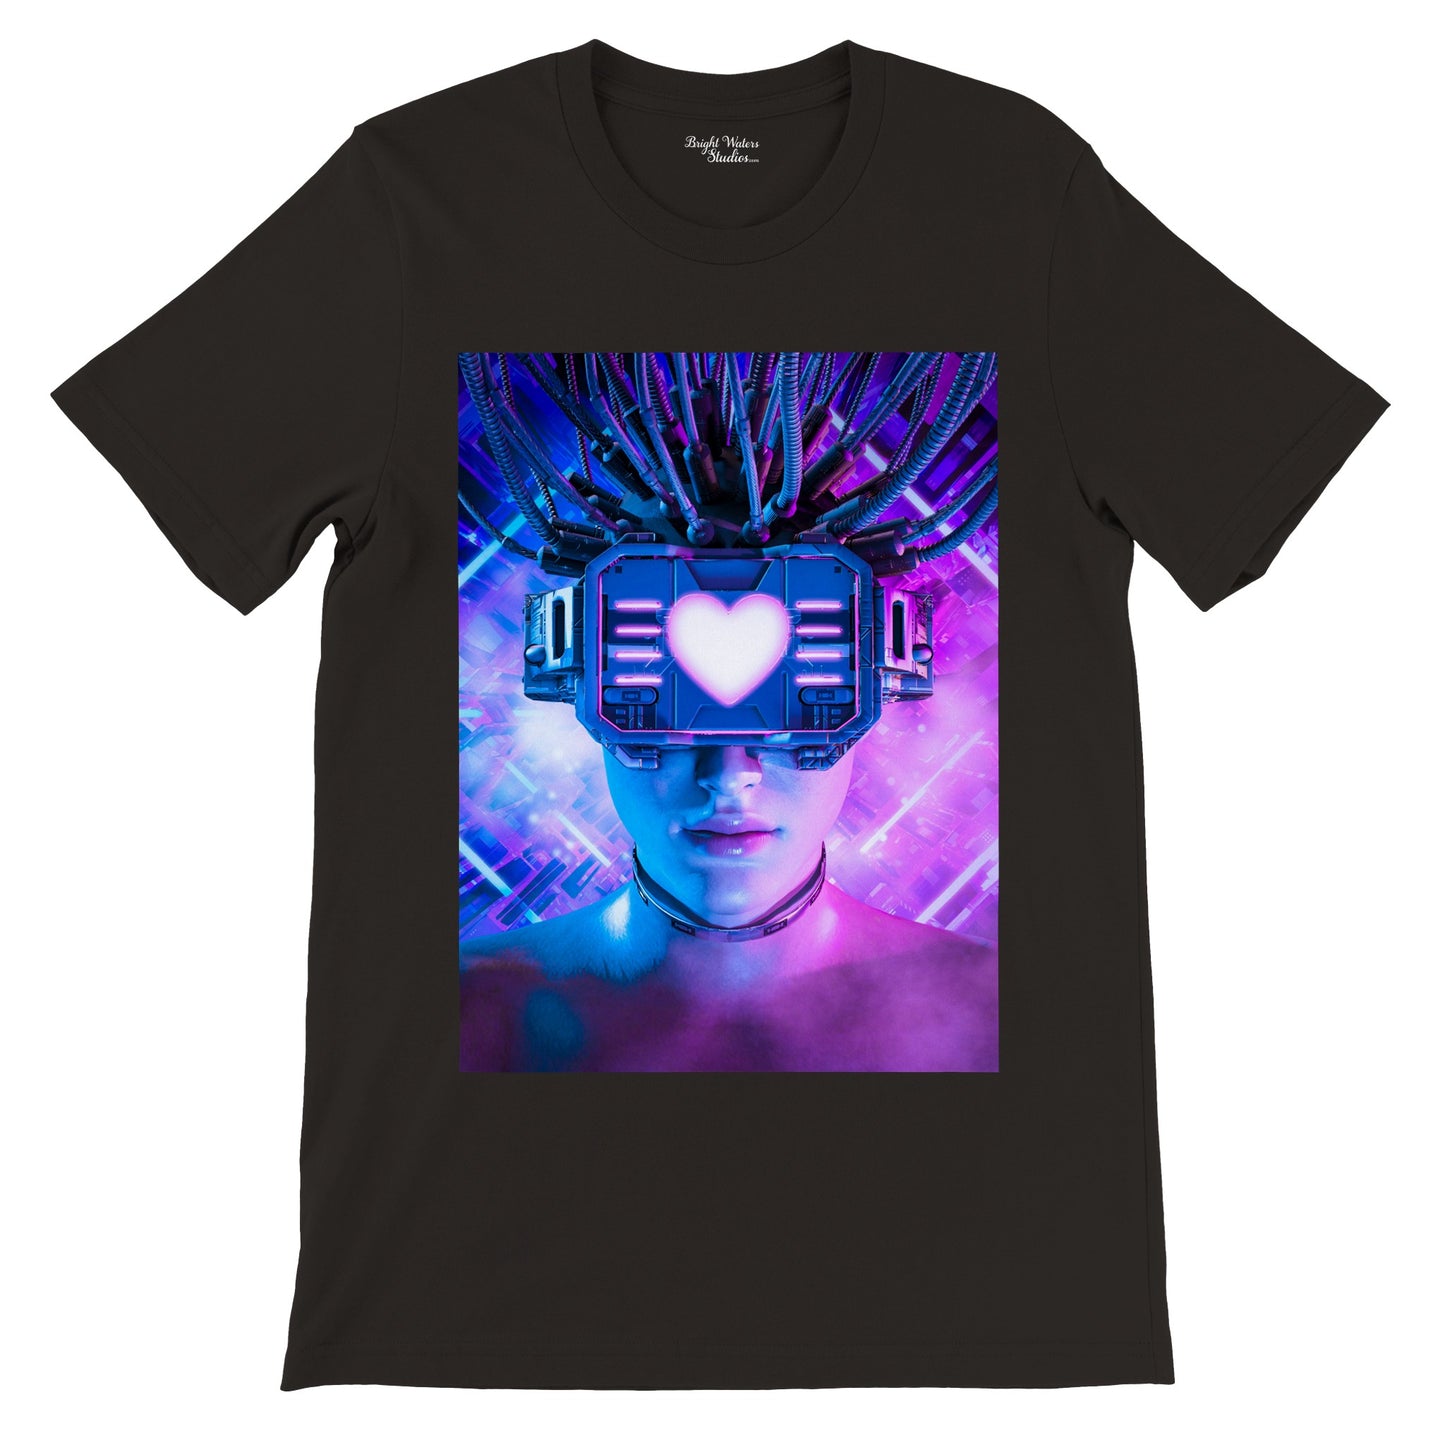 Cyborg woman T-shirt